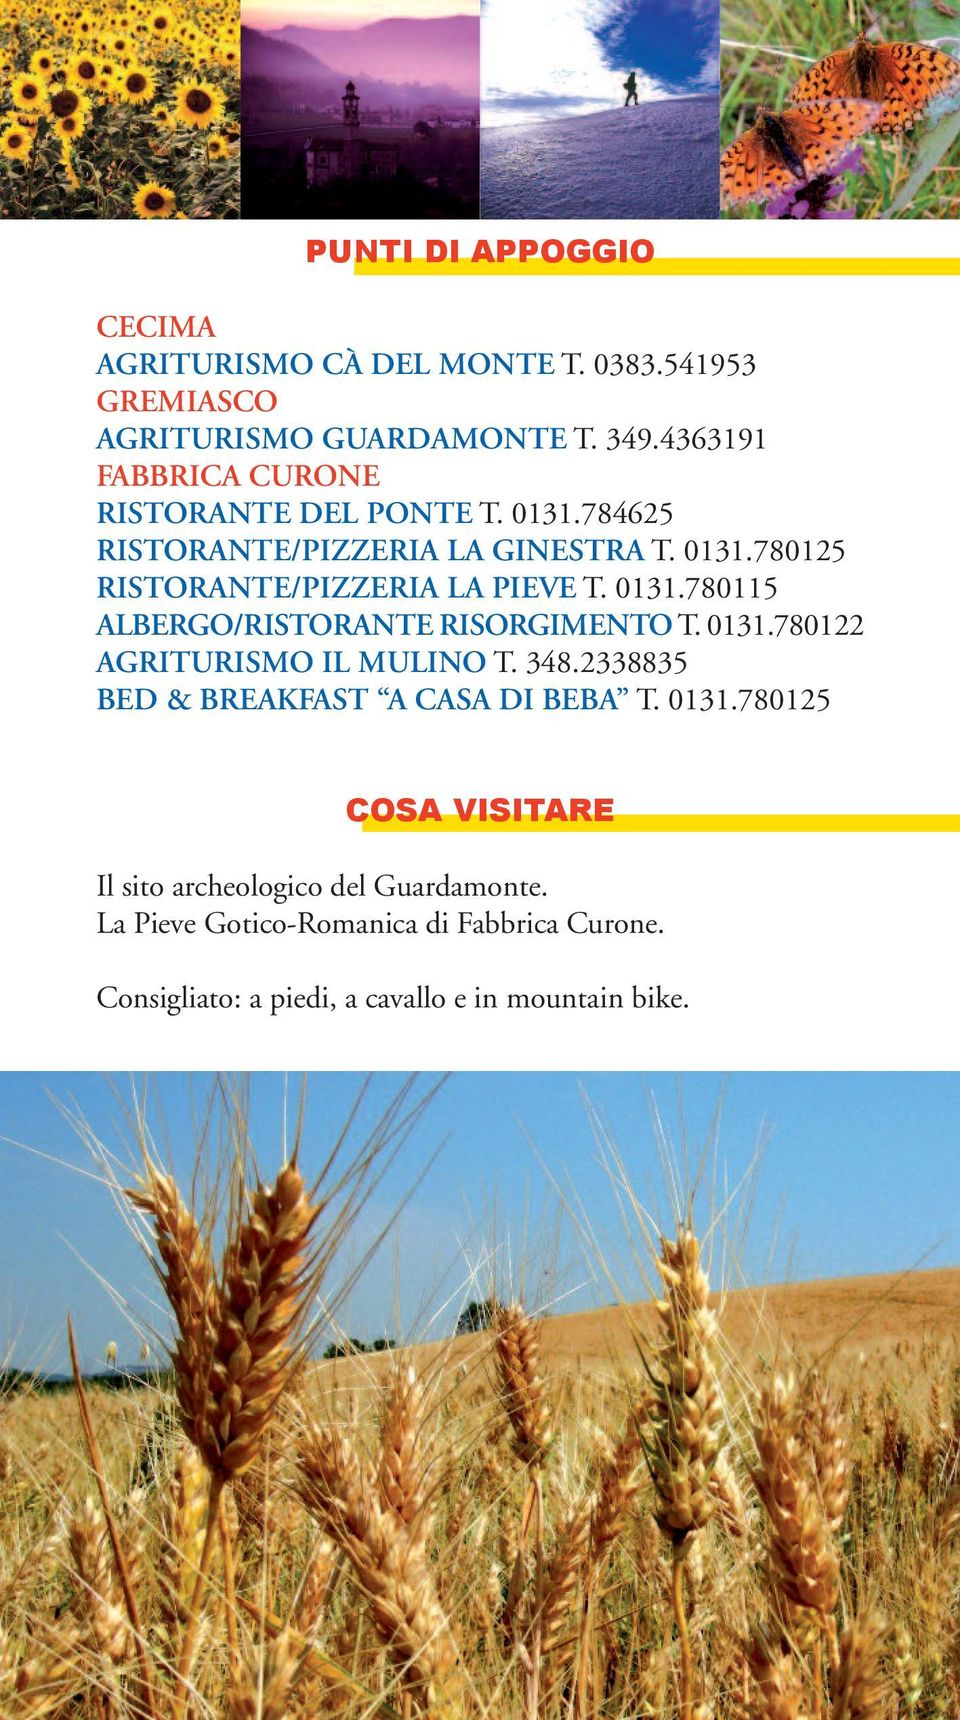 0131.780115 ALBERGO/RISTORANTE RISORGIMENTO T. 0131.780122 AGRITURISMO IL MULINO T. 348.2338835 BED & BREAKFAST A CASA DI BEBA T.